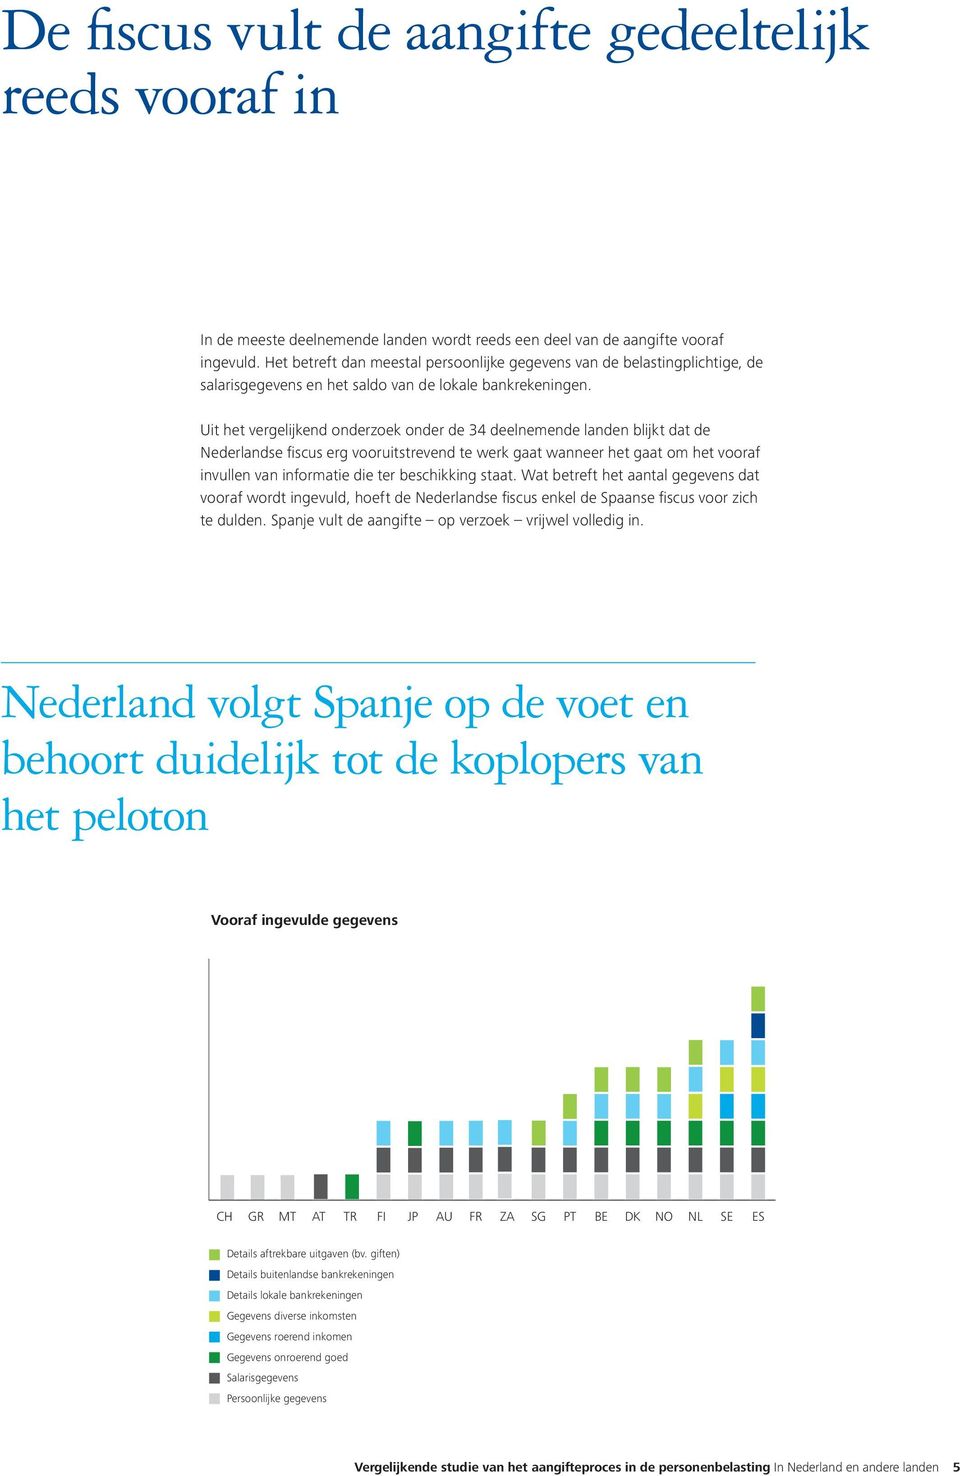 Uit het vergelijkend onderzoek onder de 34 deelnemende landen blijkt dat de Nederlandse fiscus erg vooruitstrevend te werk gaat wanneer het gaat om het vooraf invullen van informatie die ter